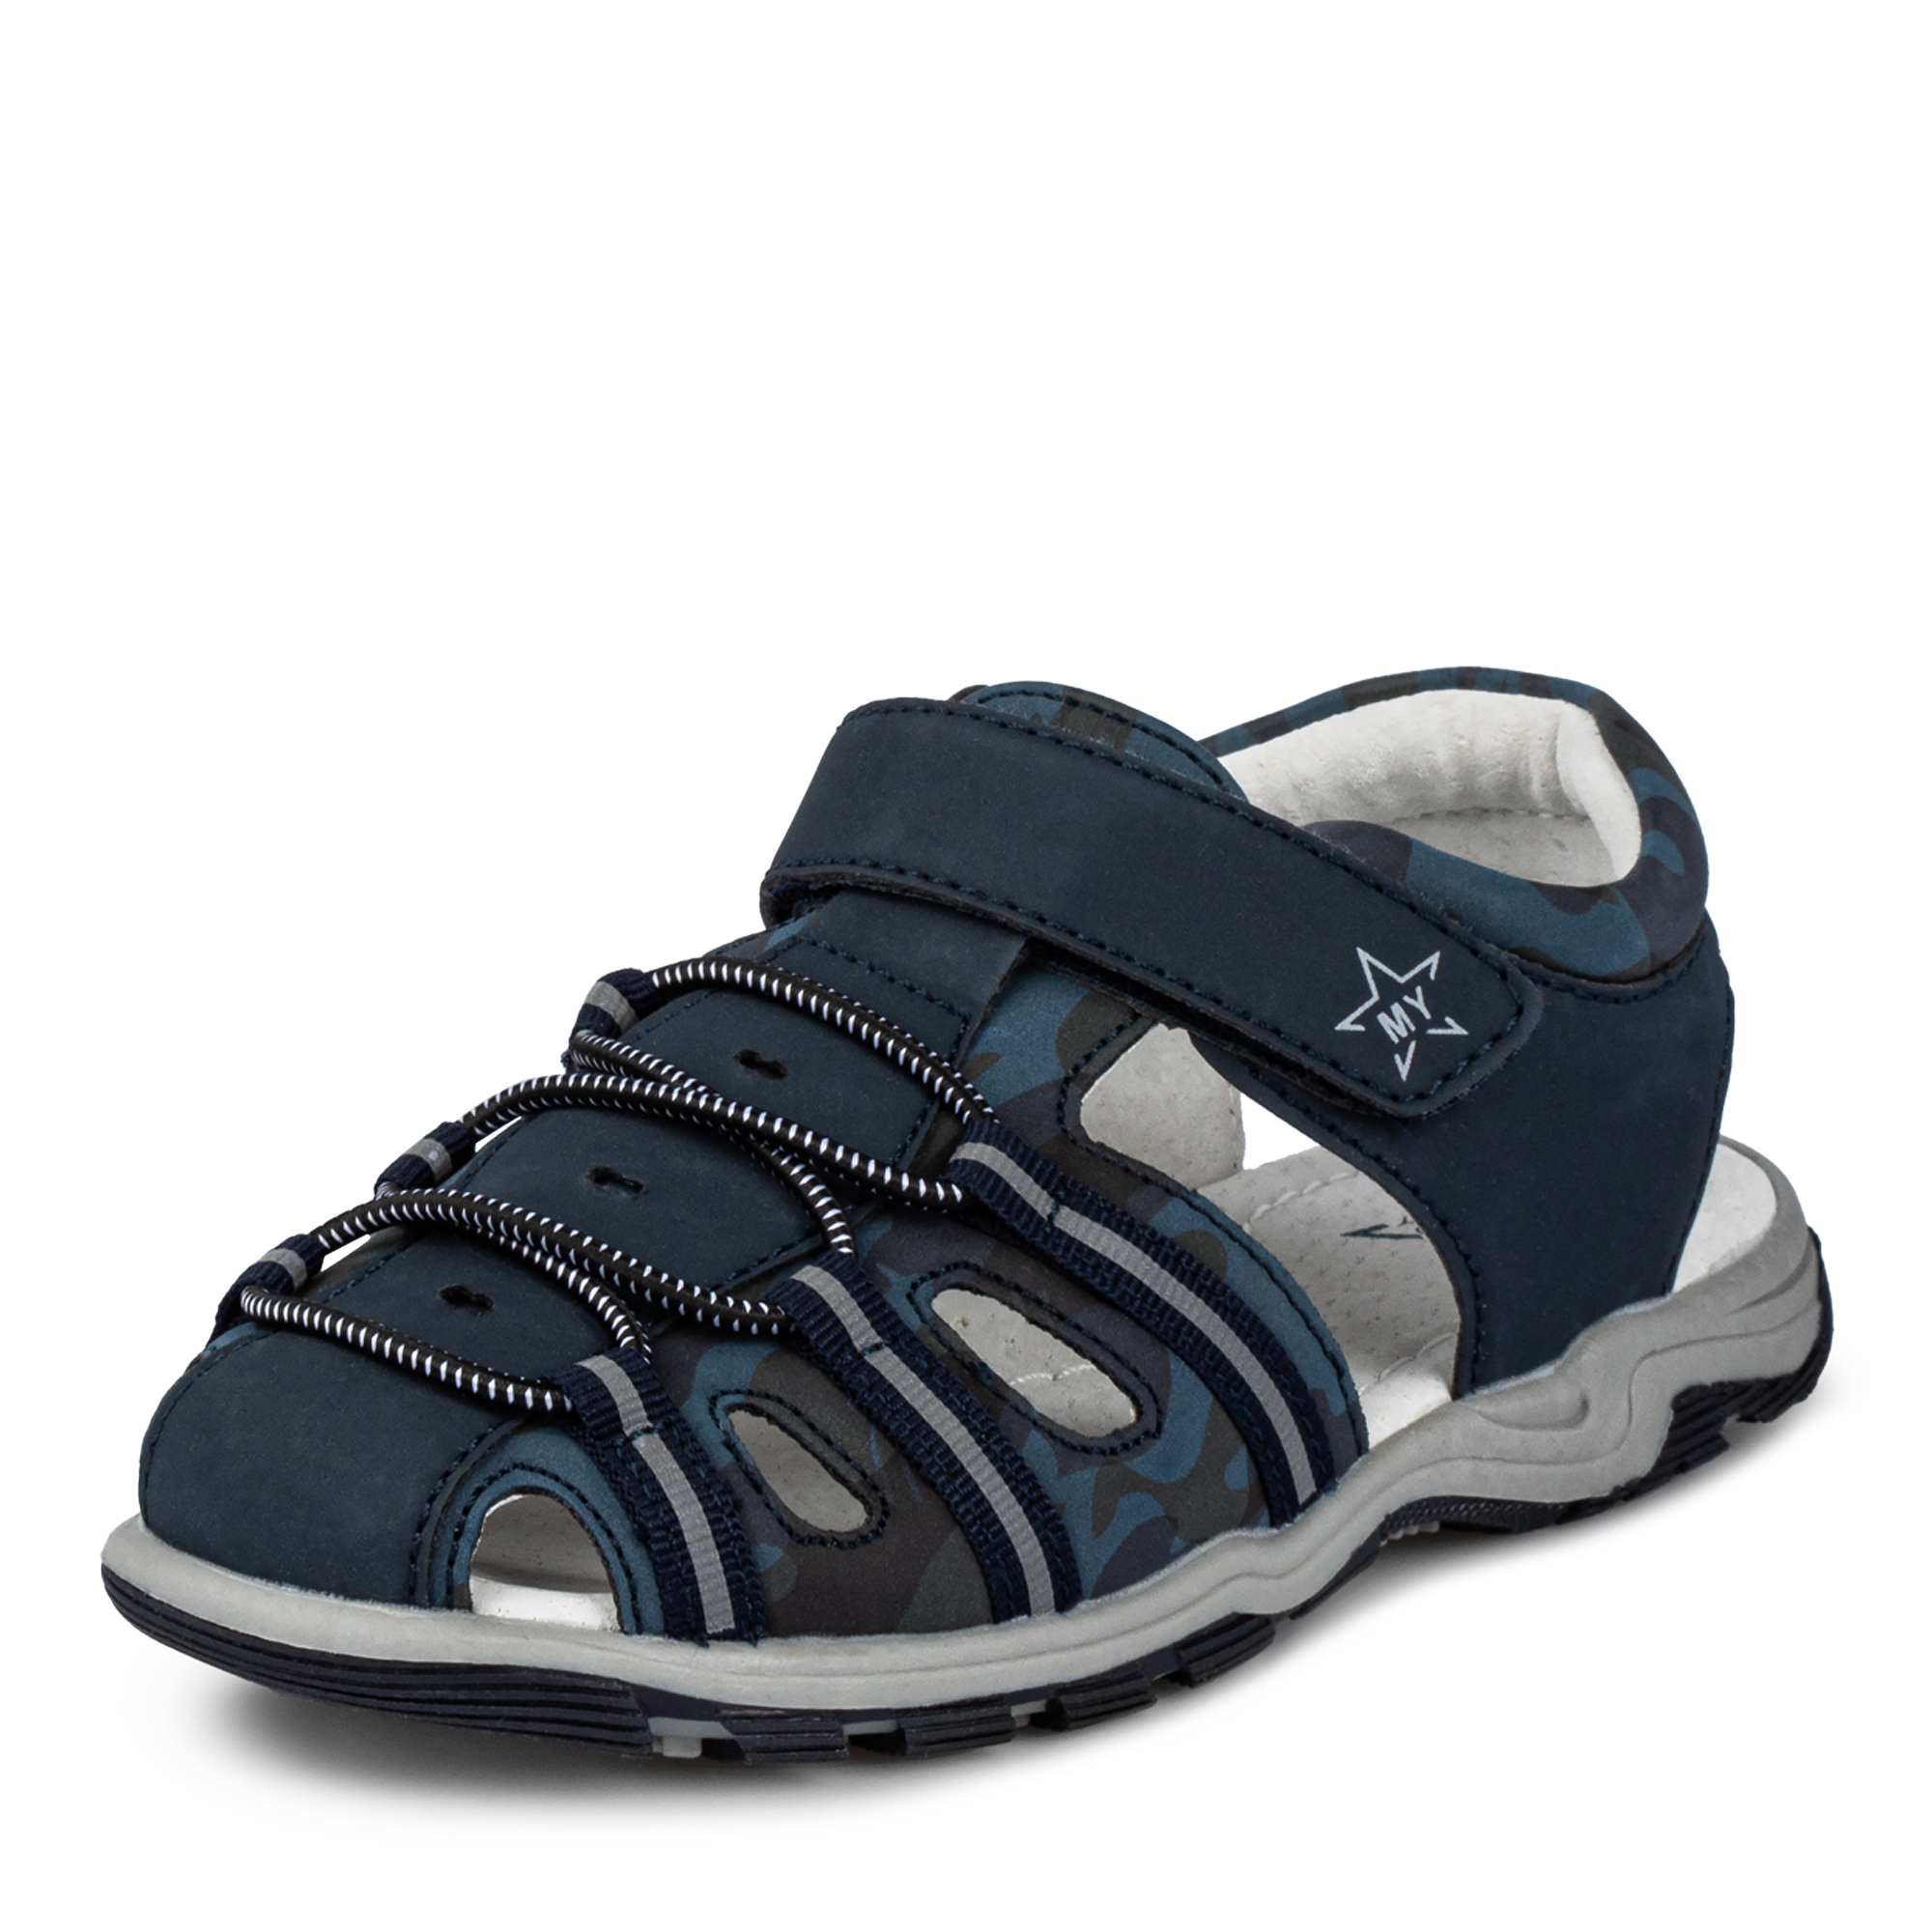 Обувь для мальчиков MUNZ YOUNG 174-050A-1603, цвет темно-синий, размер 30 - фото 2